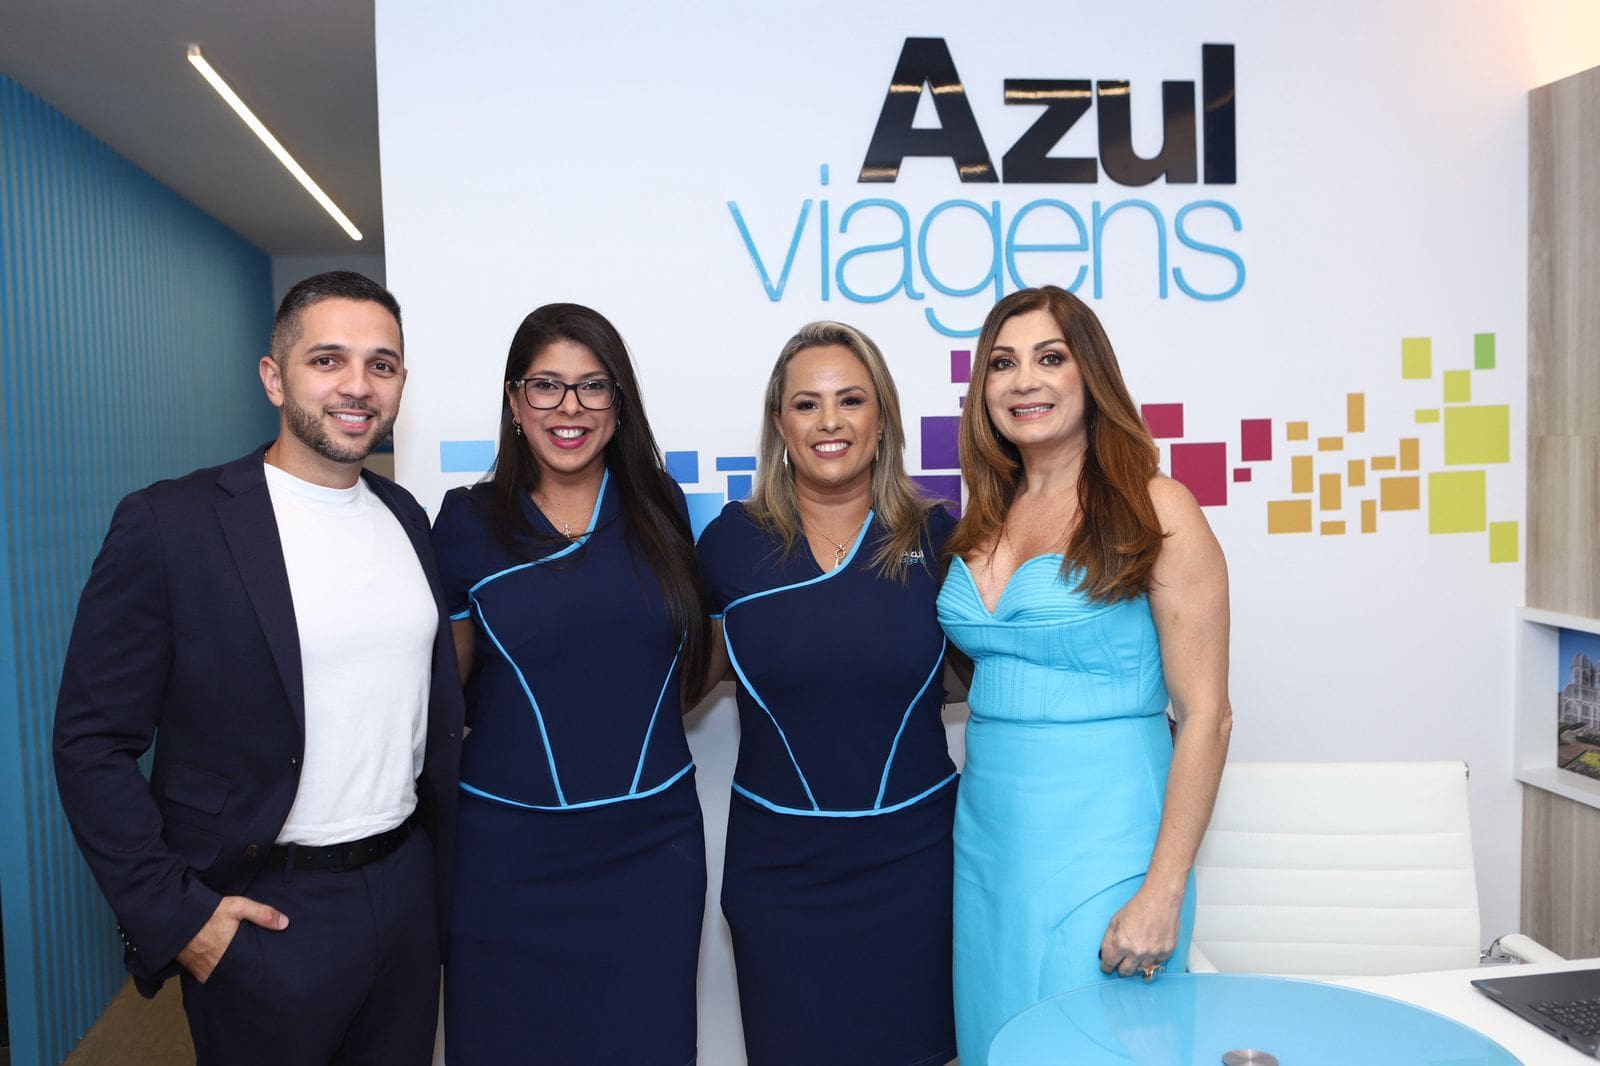 Azul Viagens inaugura sua primeira loja em Araxá, Minas Gerais